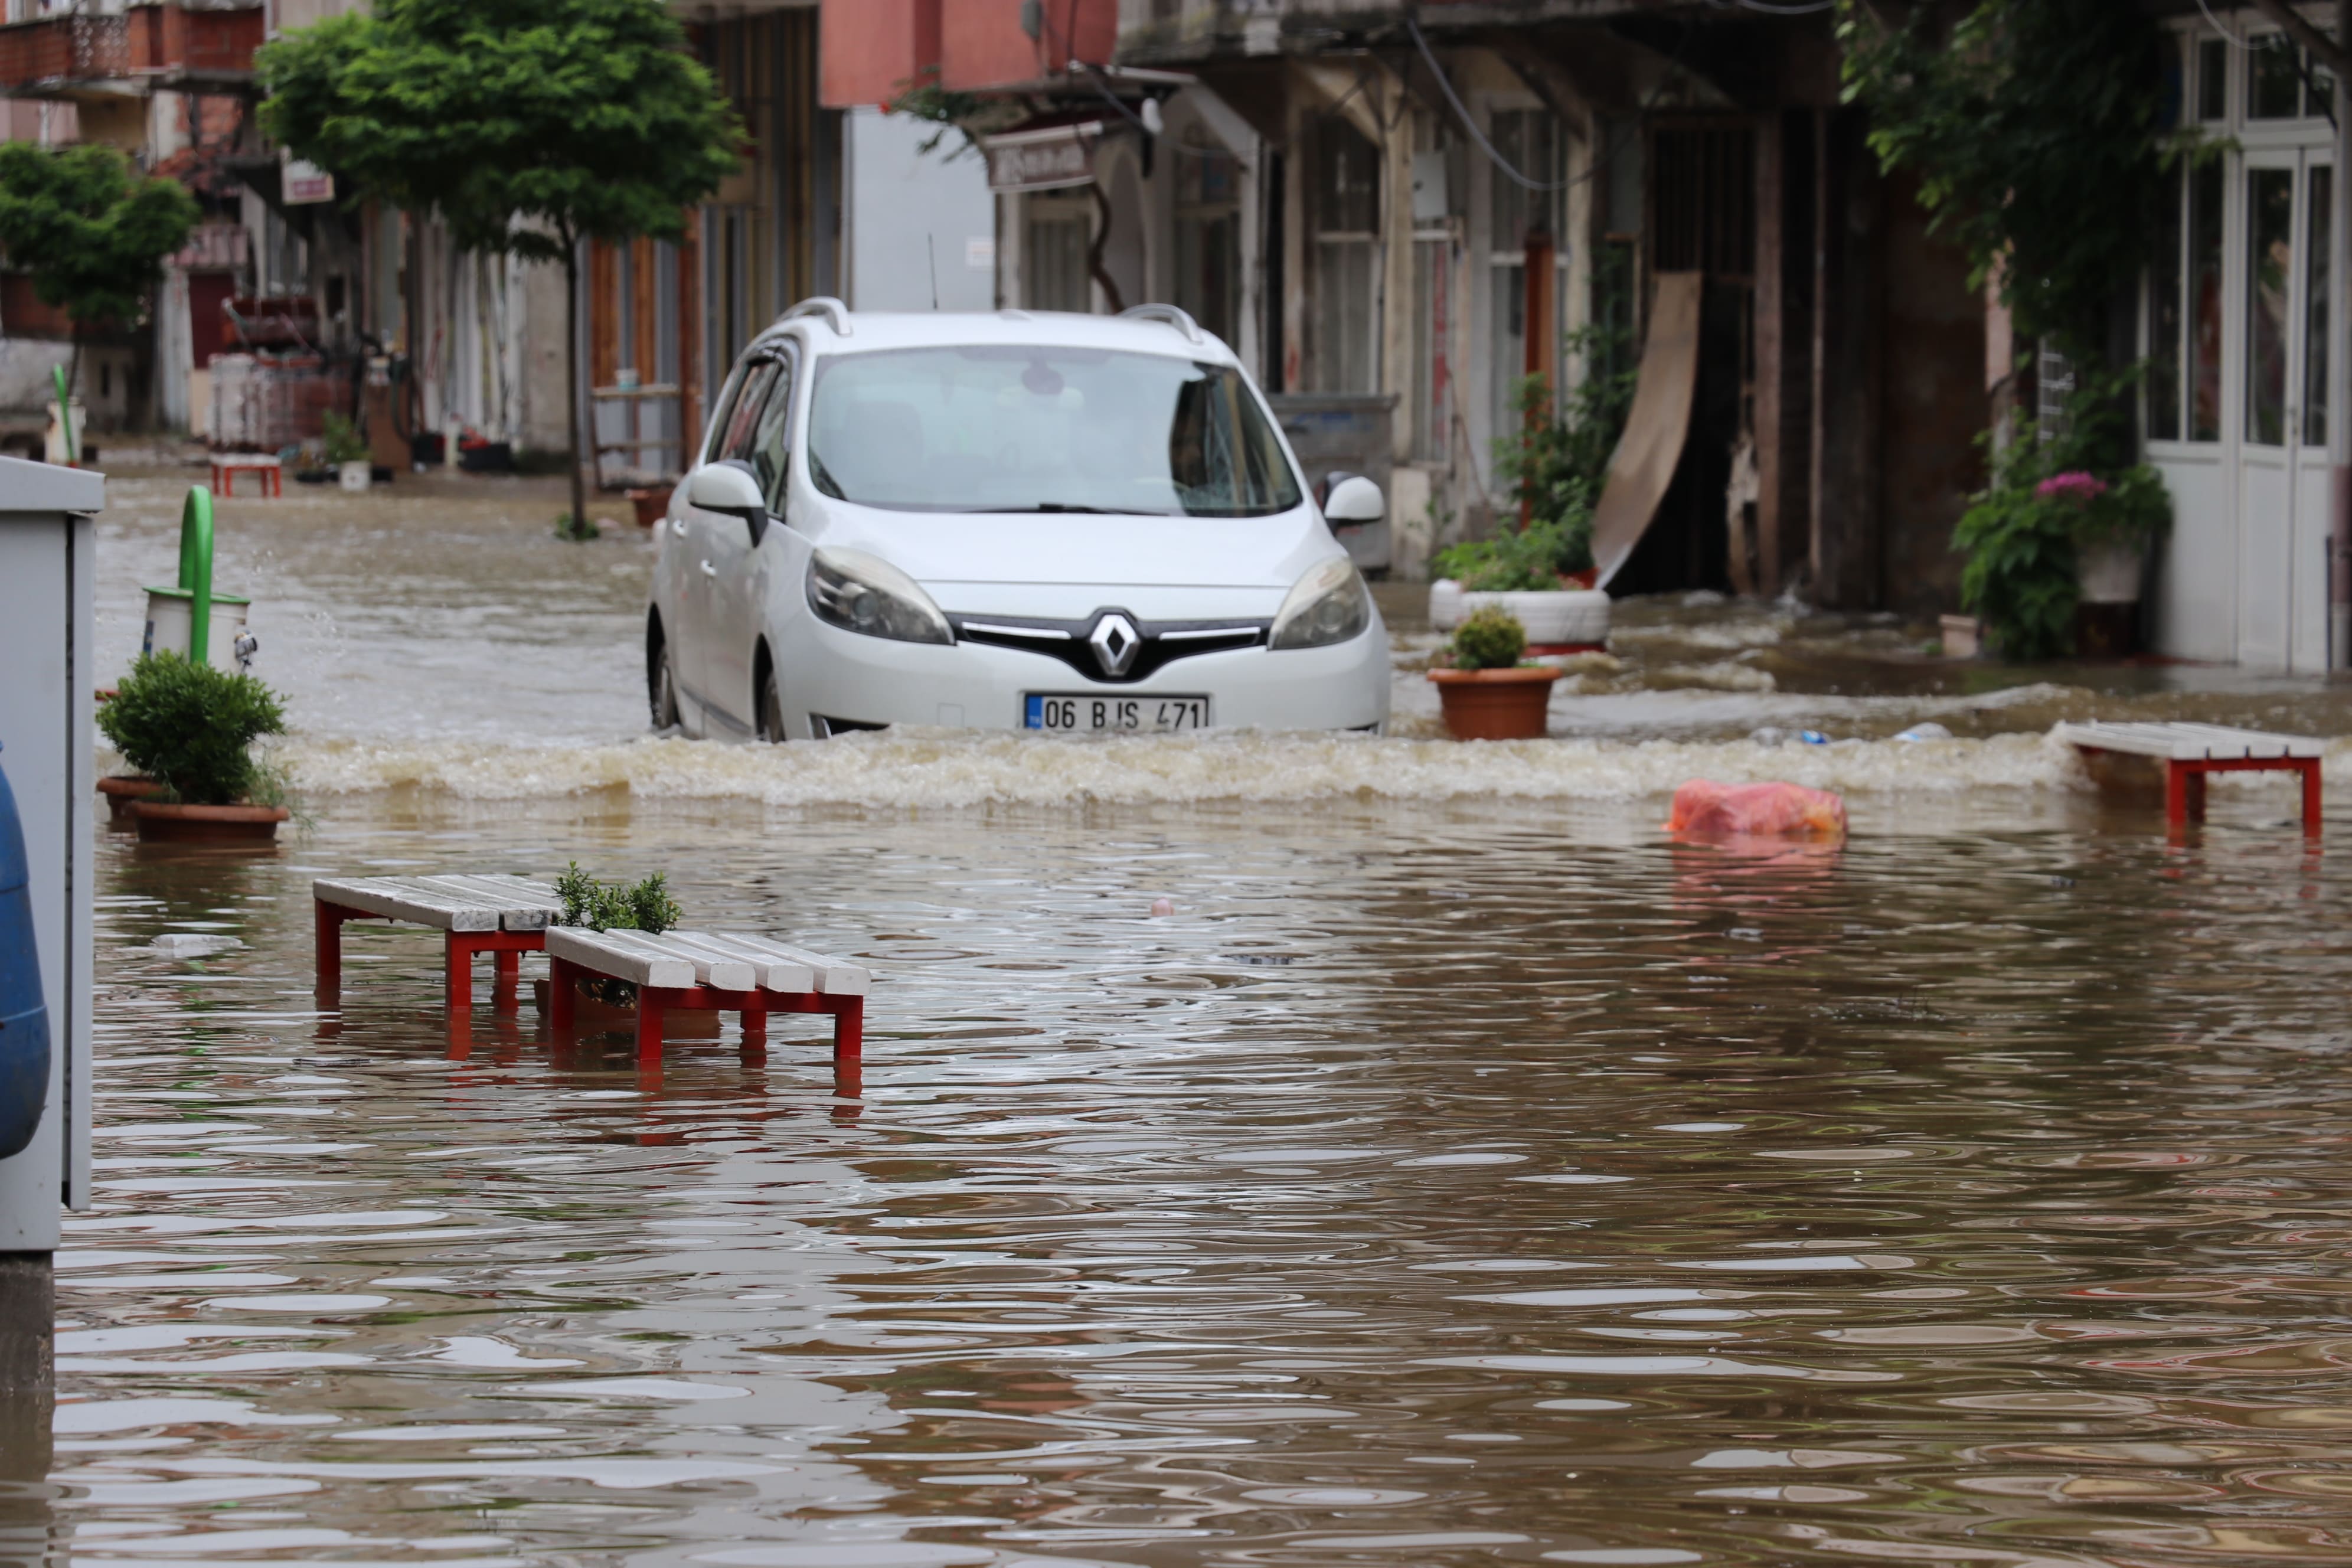 Zonguldak tamamen su altında